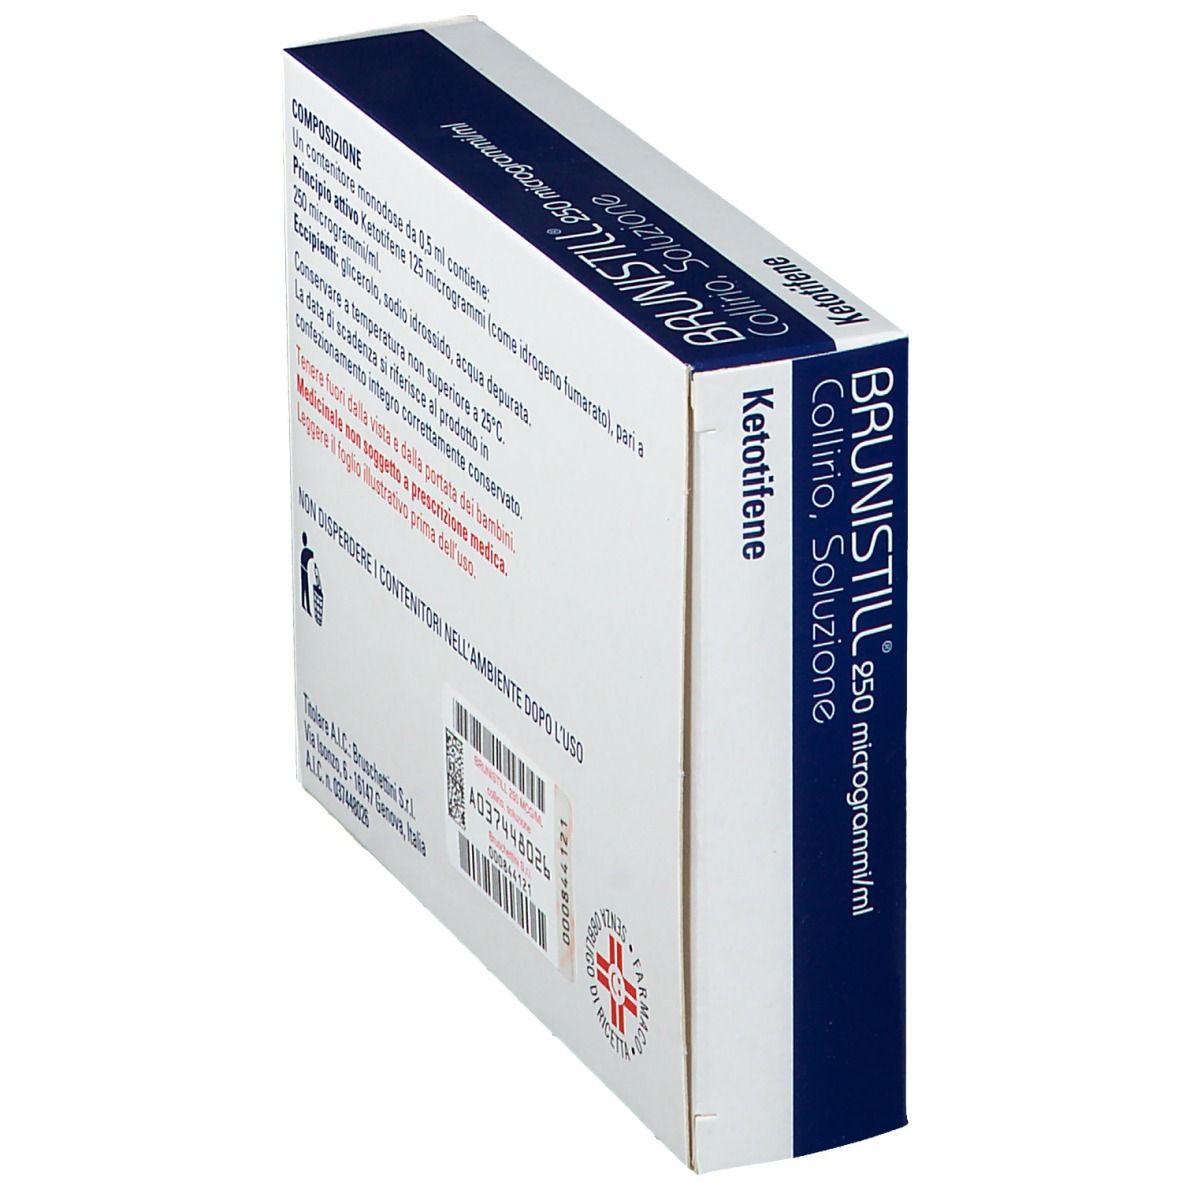 Brunistill® 250 microgrammi/ml Collirio, soluzione